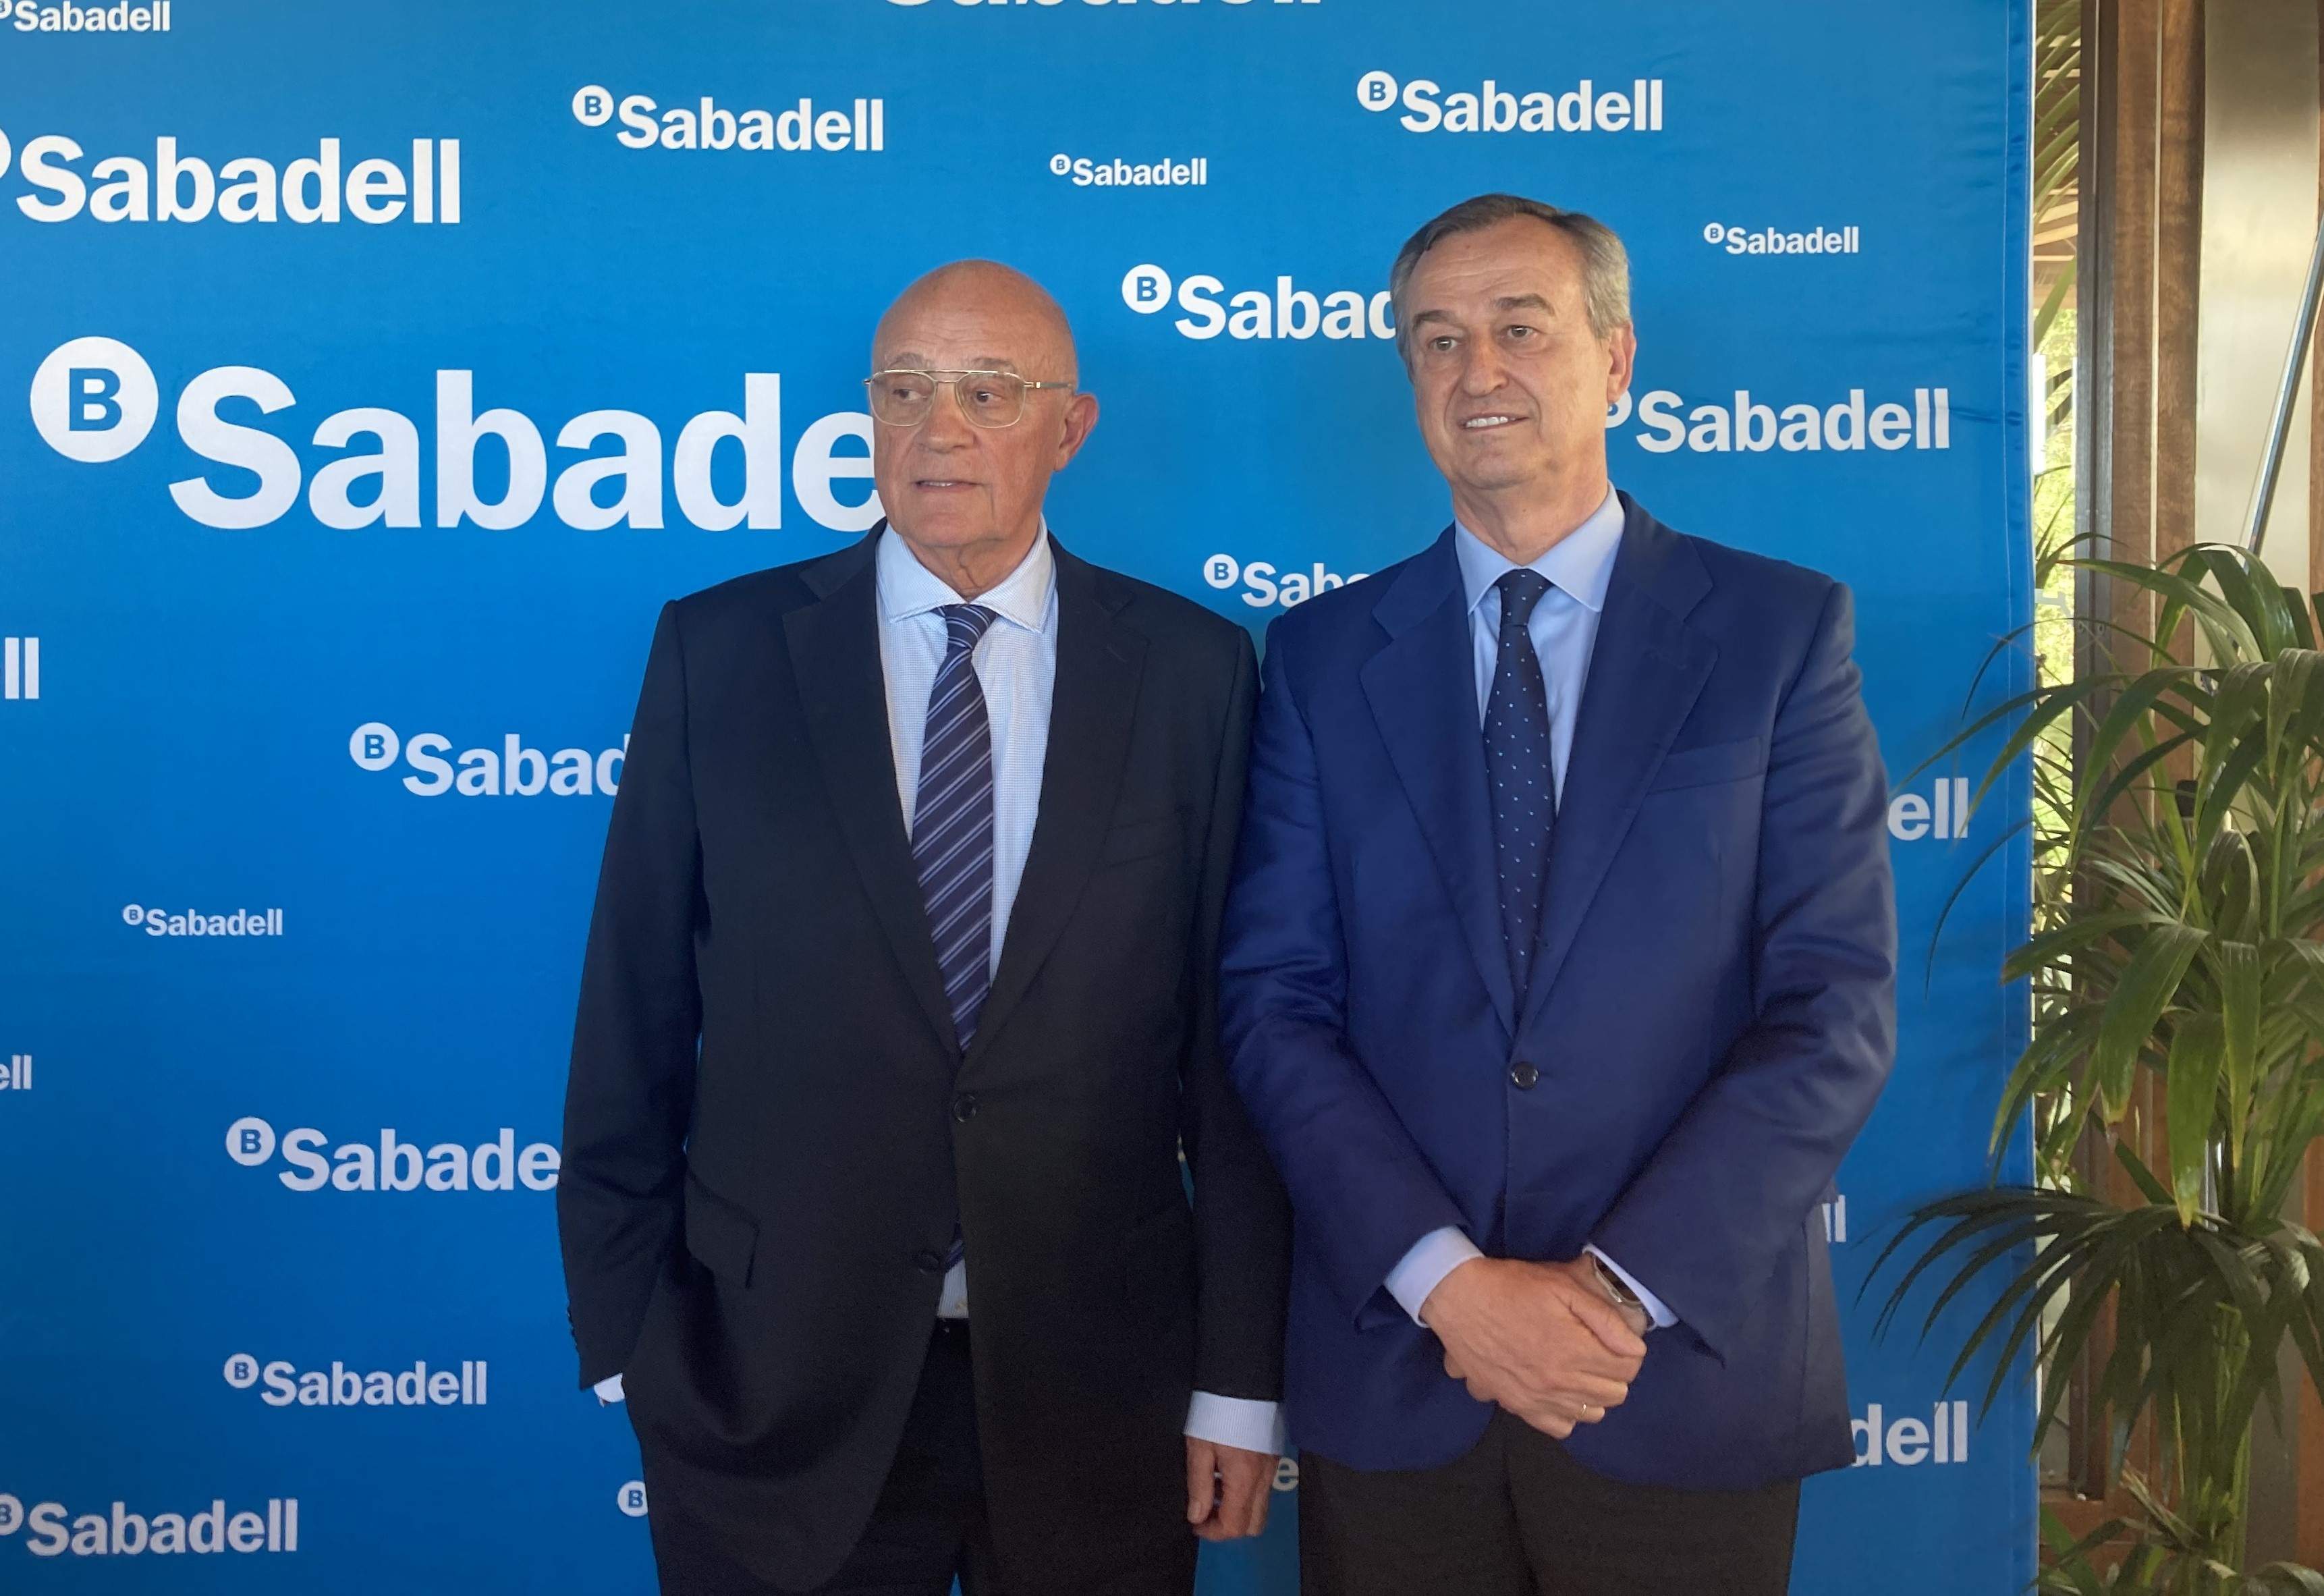 Sabadell saca pecho del rally en bolsa: "Somos el segundo mejor banco europeo"